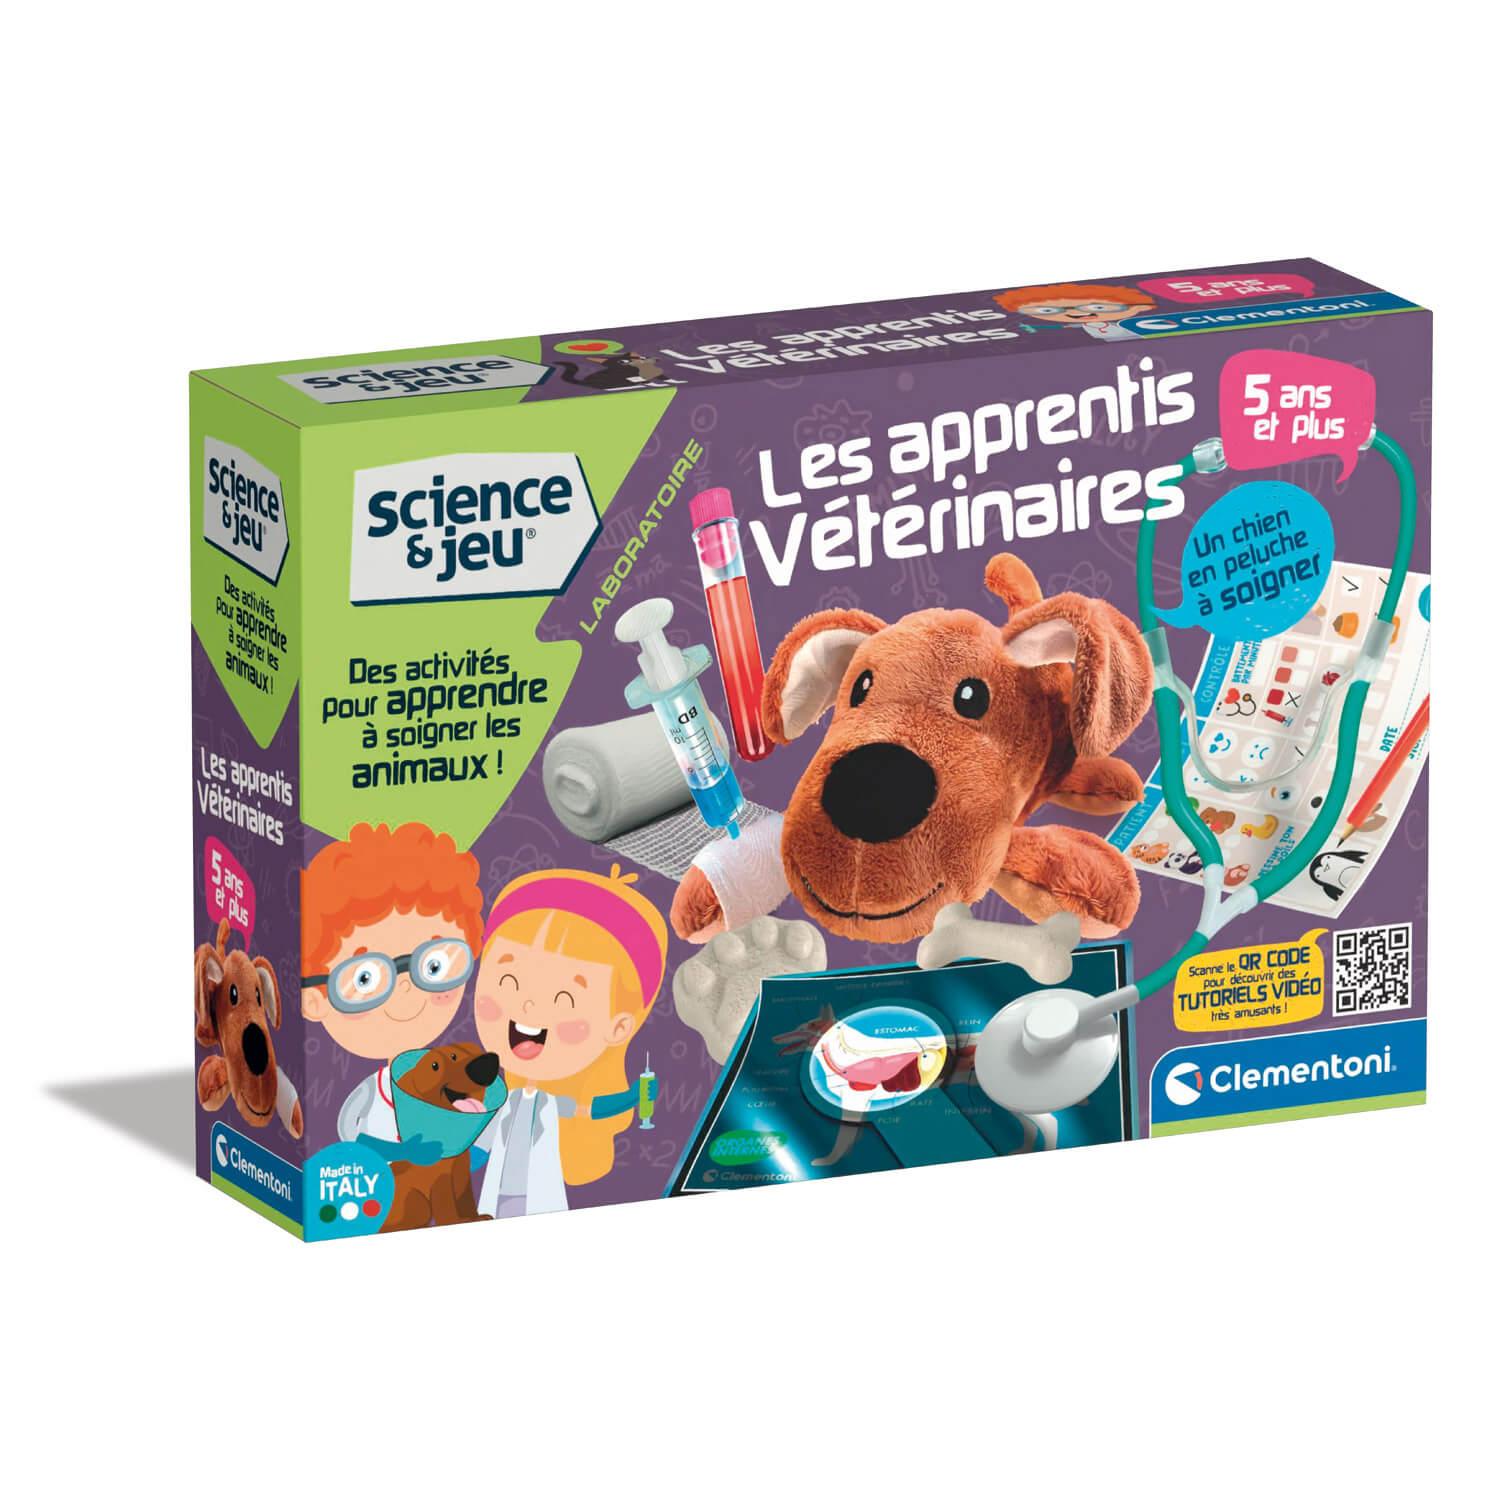 CLEMENTONI Kit science et jeu : Les apprentis vétérinaires pas cher 